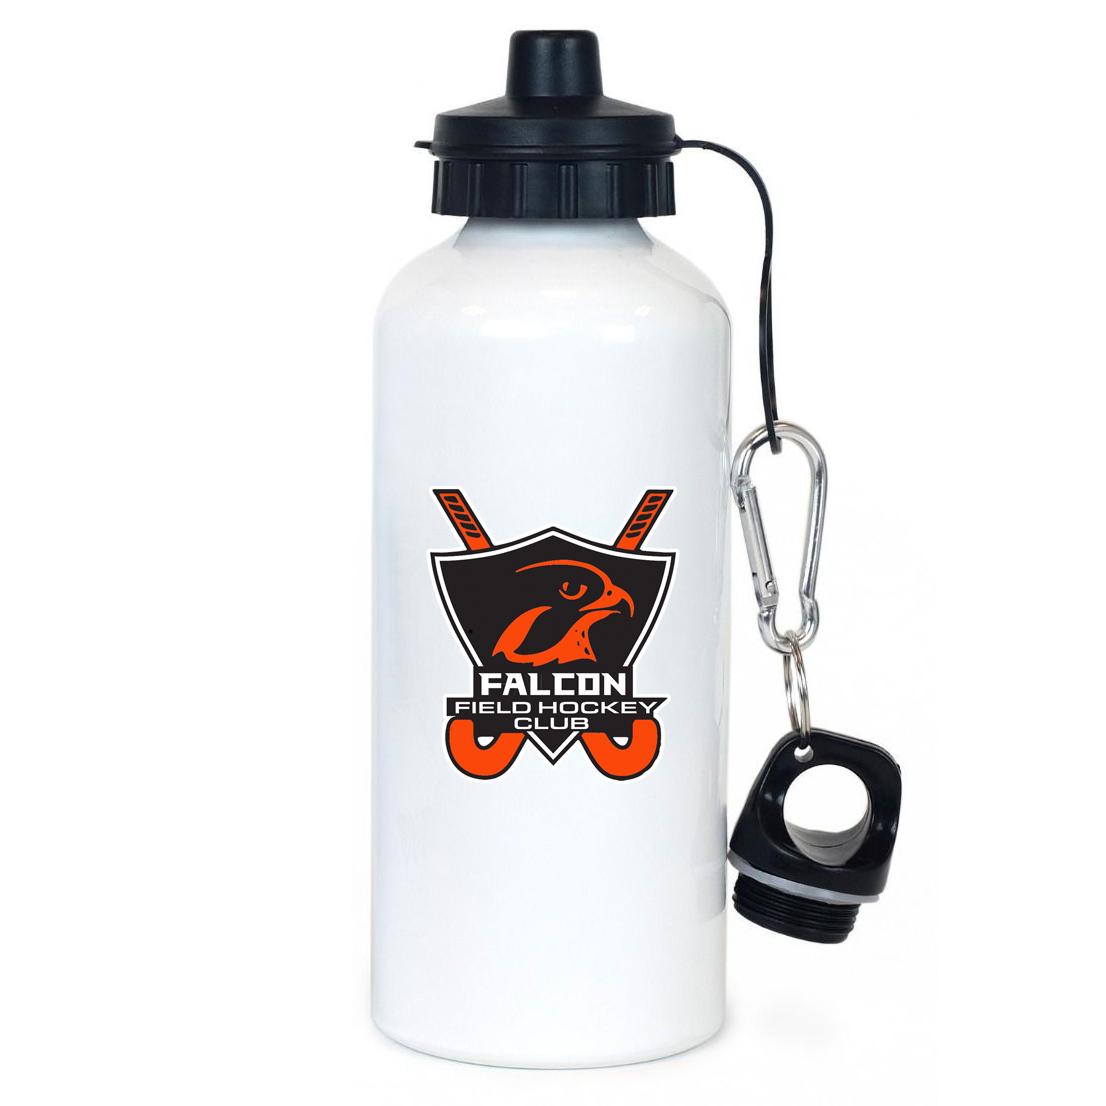 Falcons Field Hockey Club Team Water Bottle